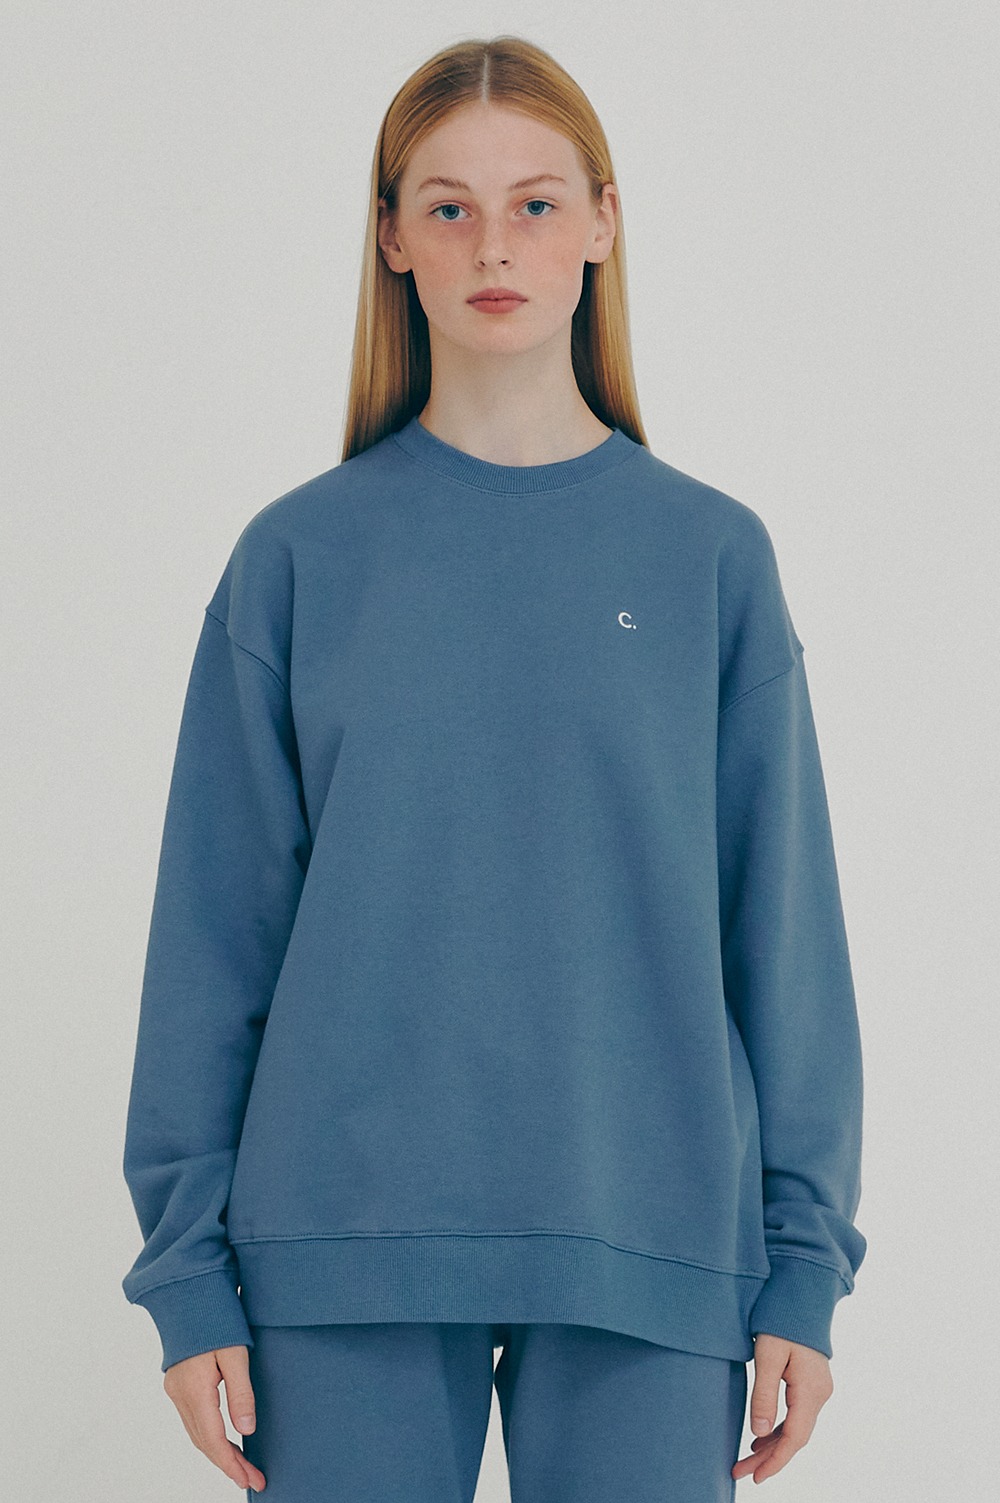 clove - Active Sweatshirt_Women (Blue)